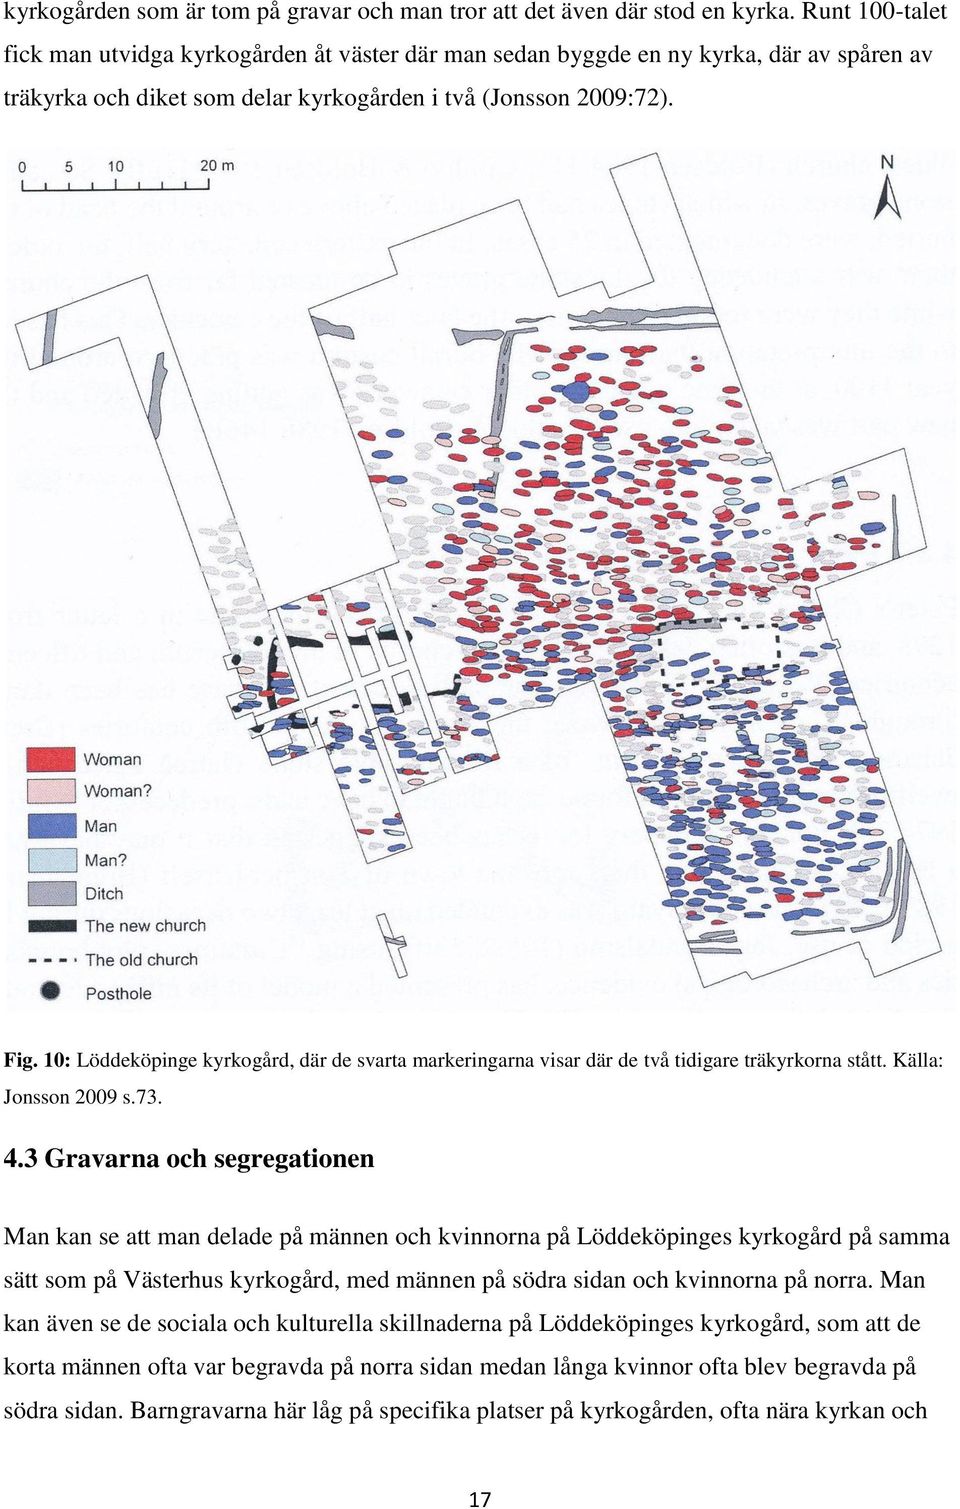 10: Löddeköpinge kyrkogård, där de svarta markeringarna visar där de två tidigare träkyrkorna stått. Källa: Jonsson 2009 s.73. 4.